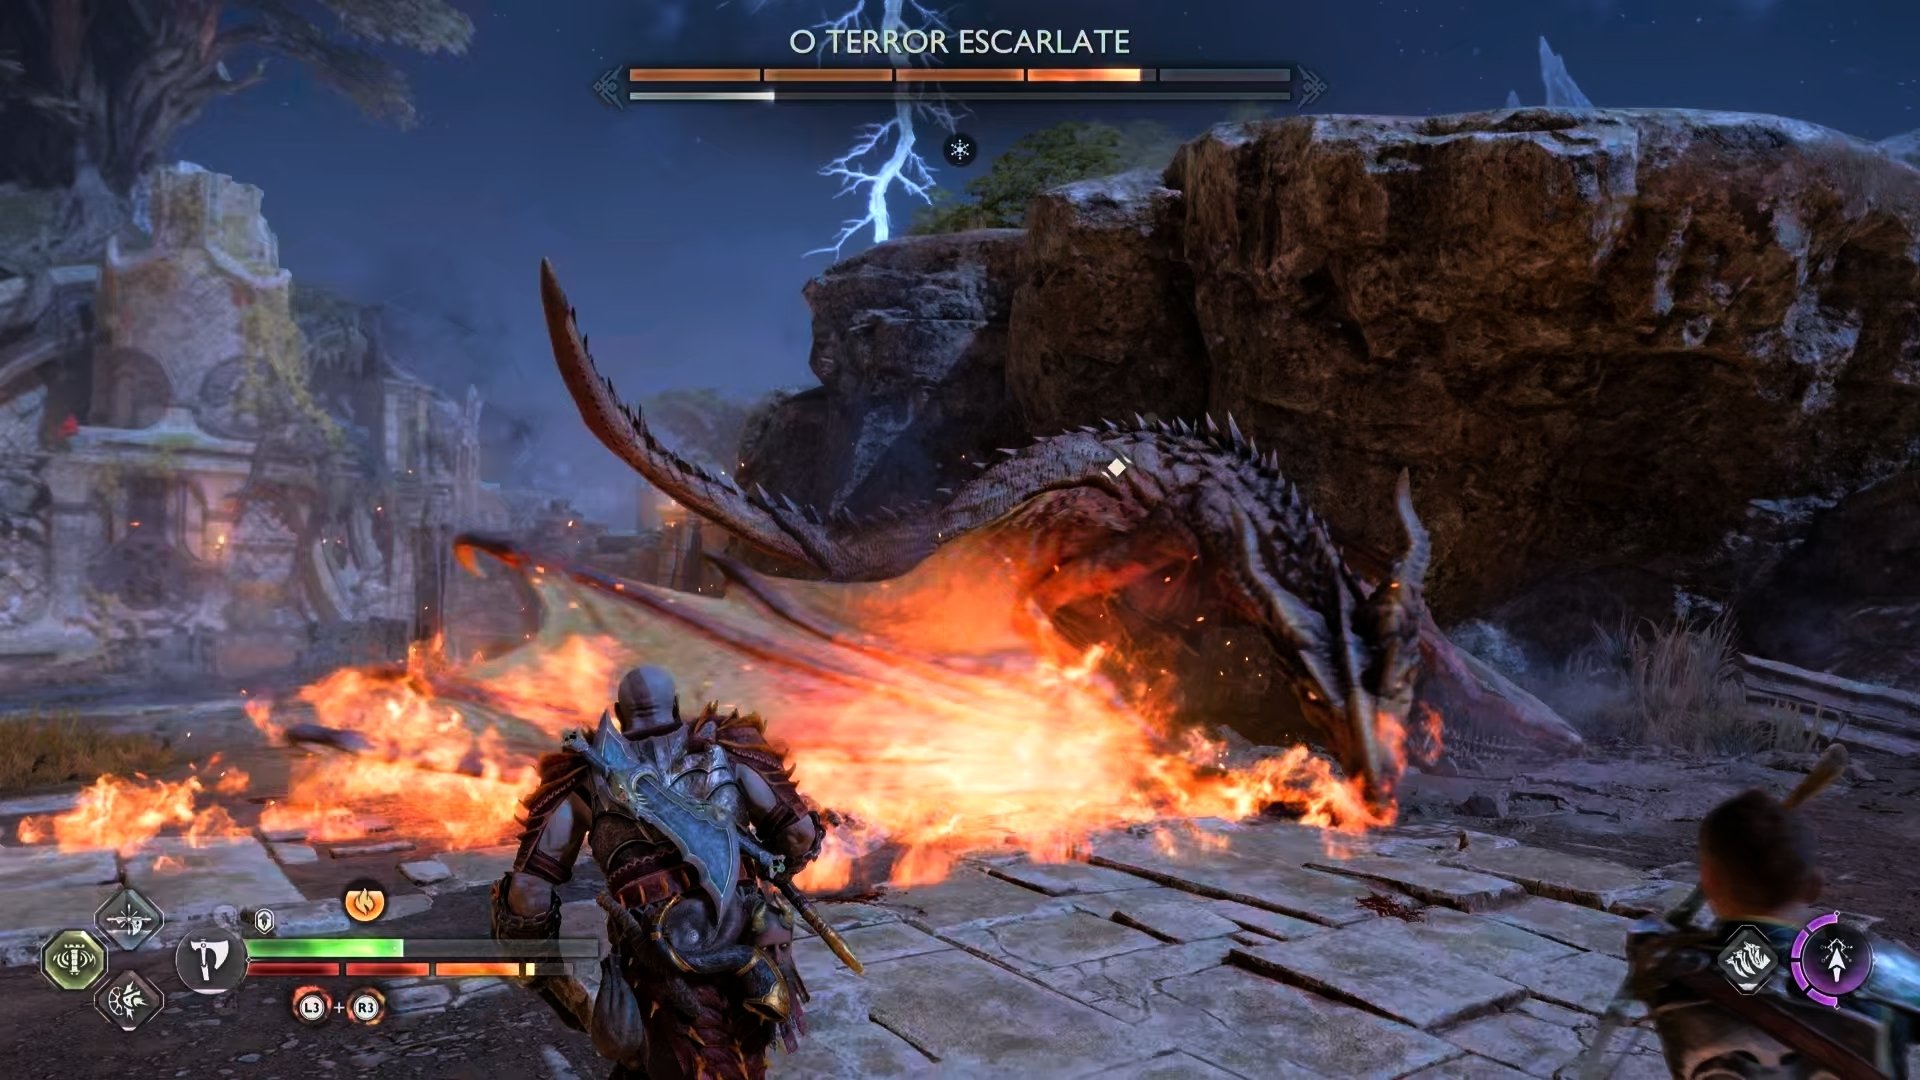 Review: God of War Ragnarok equilibra enredo emocional e gameplay